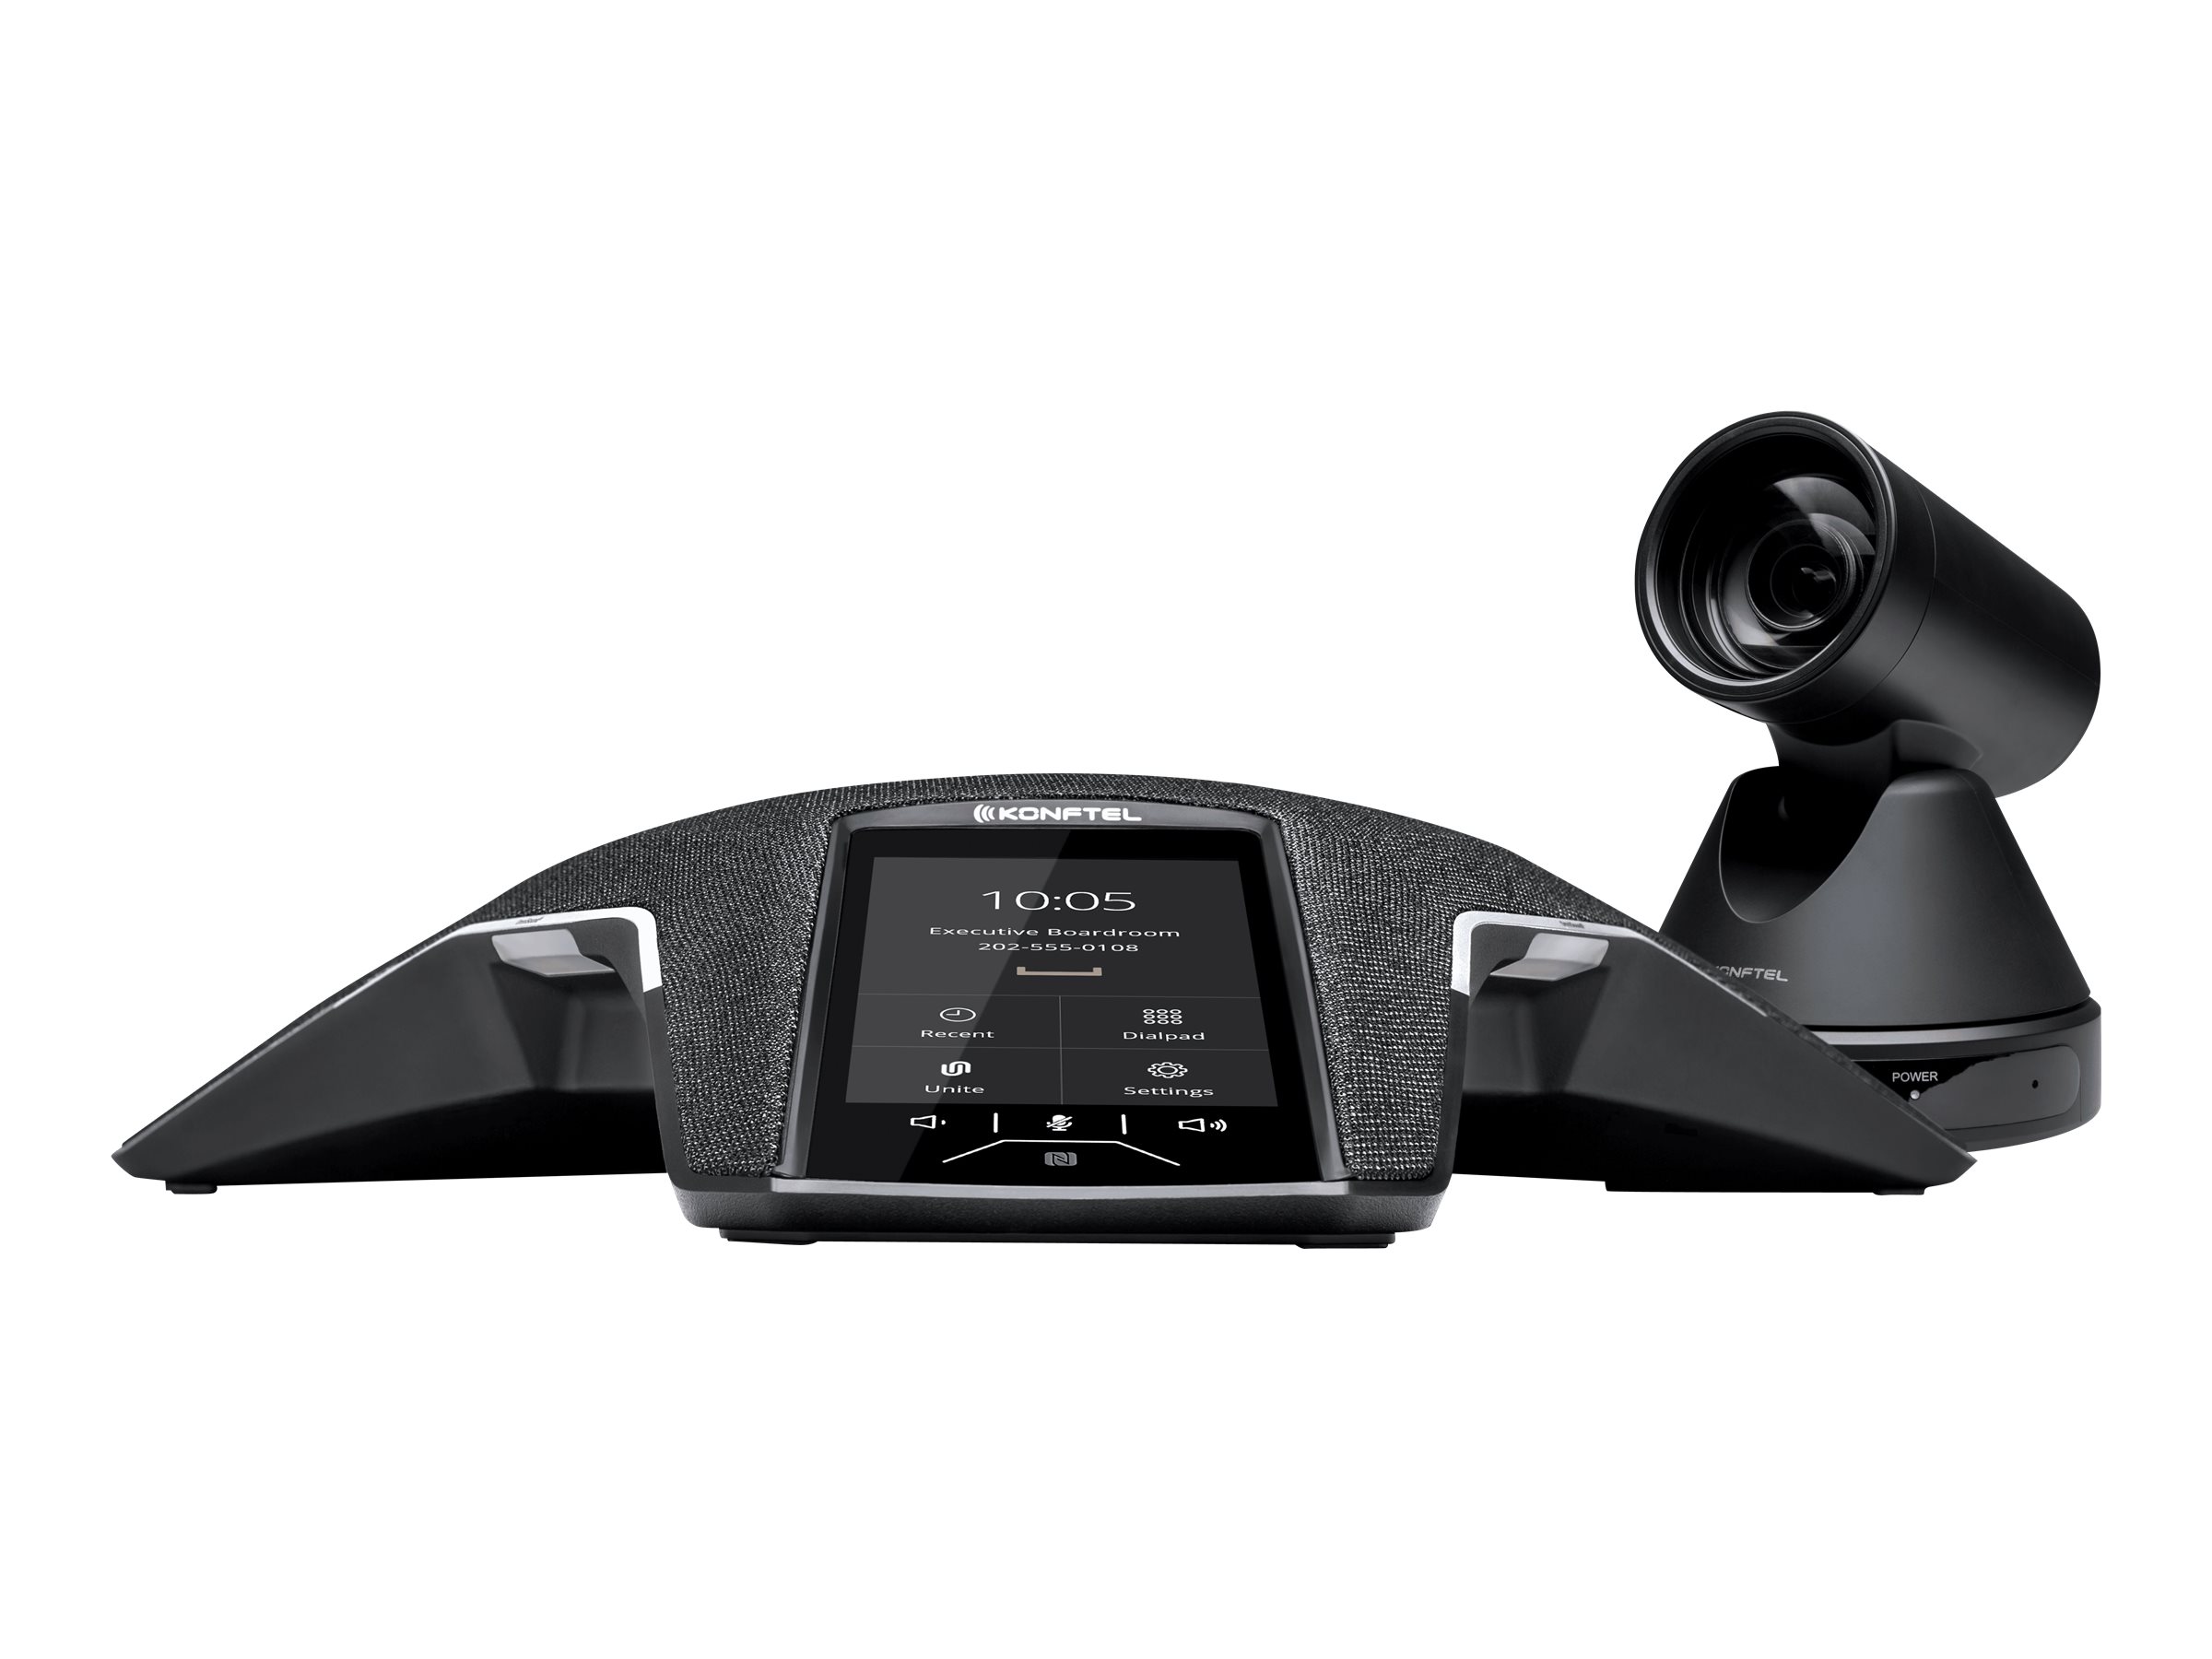 Konftel C50800 Attach - Kit für Videokonferenzen (Freisprechgerät, camera, PoE-Injektor) - Schwarz, Charcoal Black